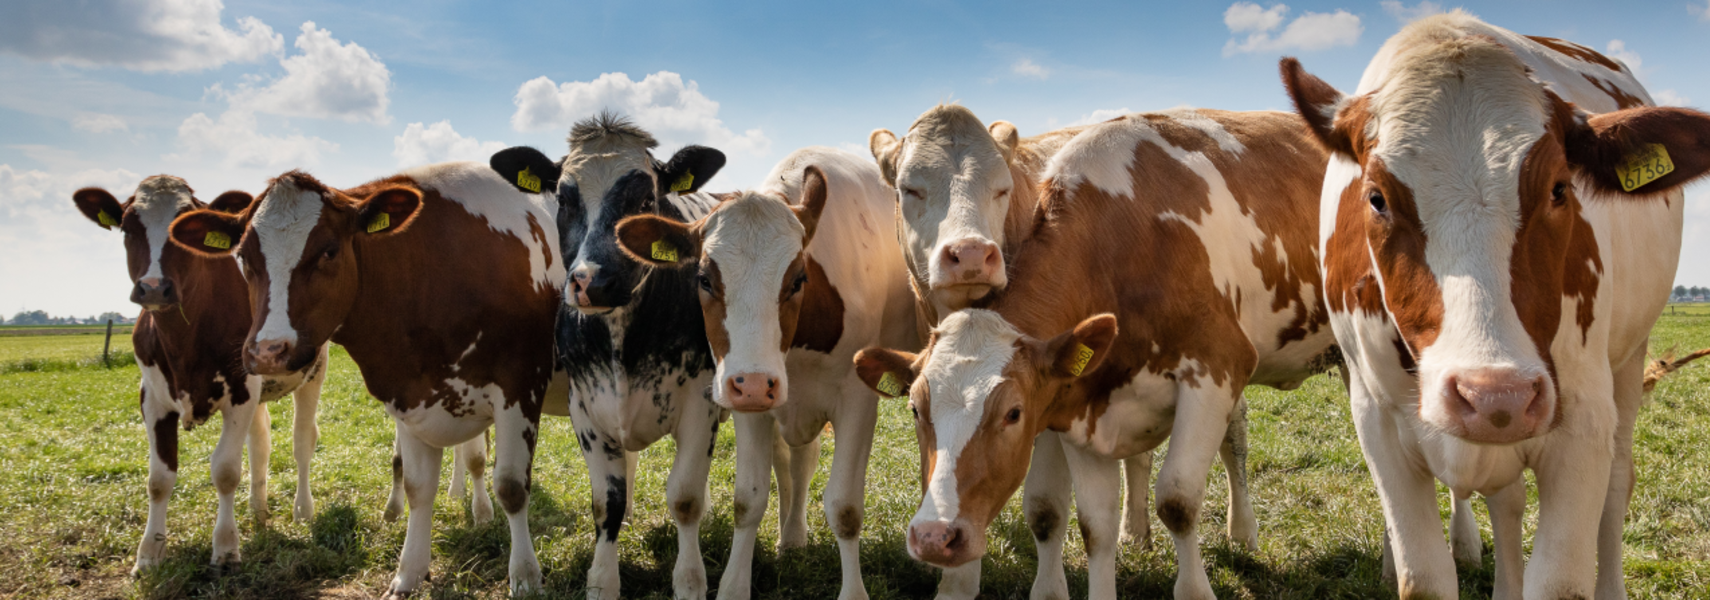 Milchviehhaltung: Auf dem Weg in eine nachhaltige Zukunft